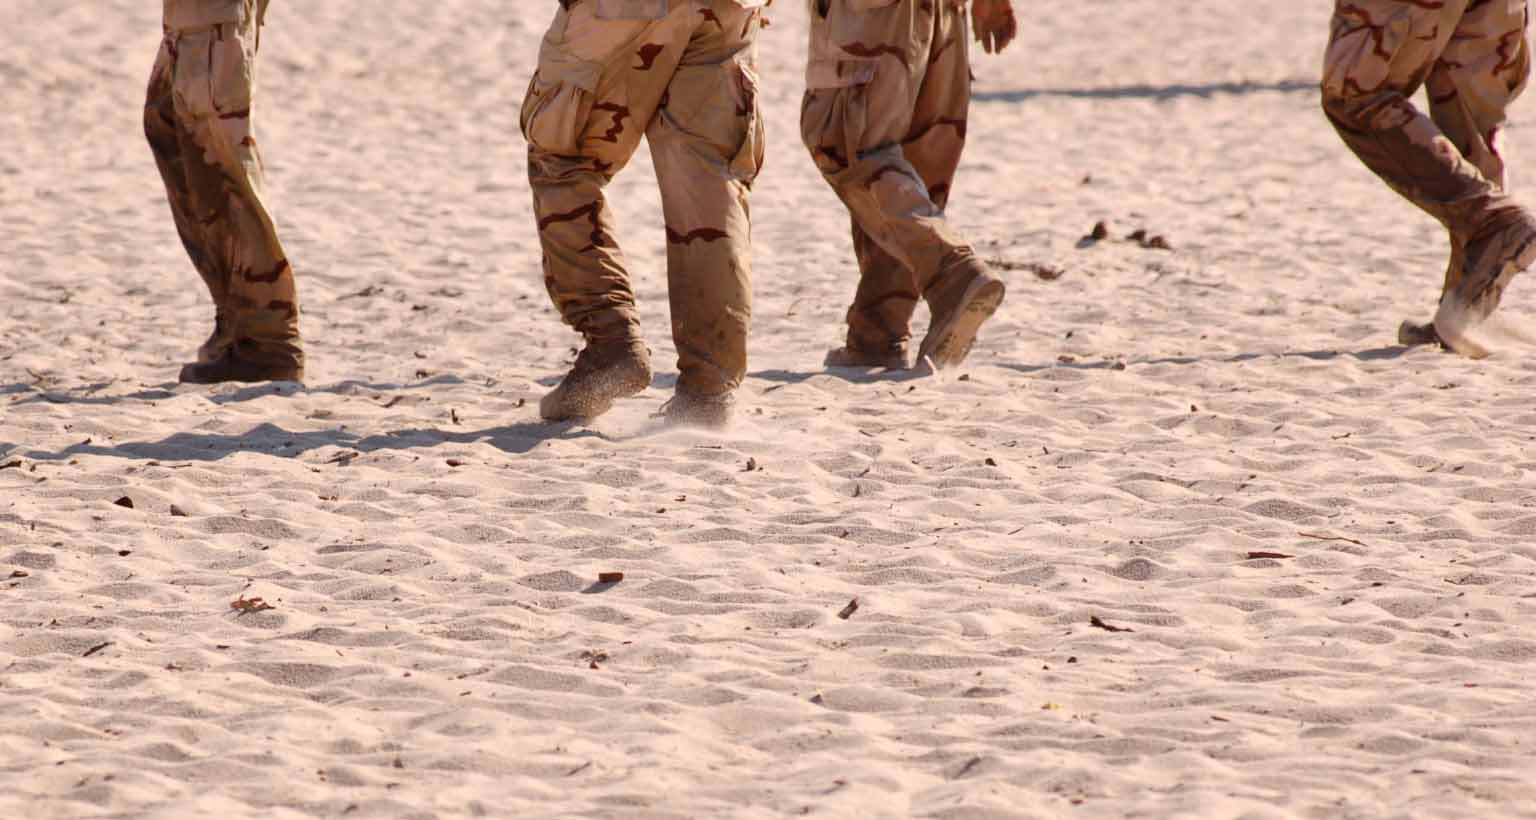 Gulf War soldiers walking on sand